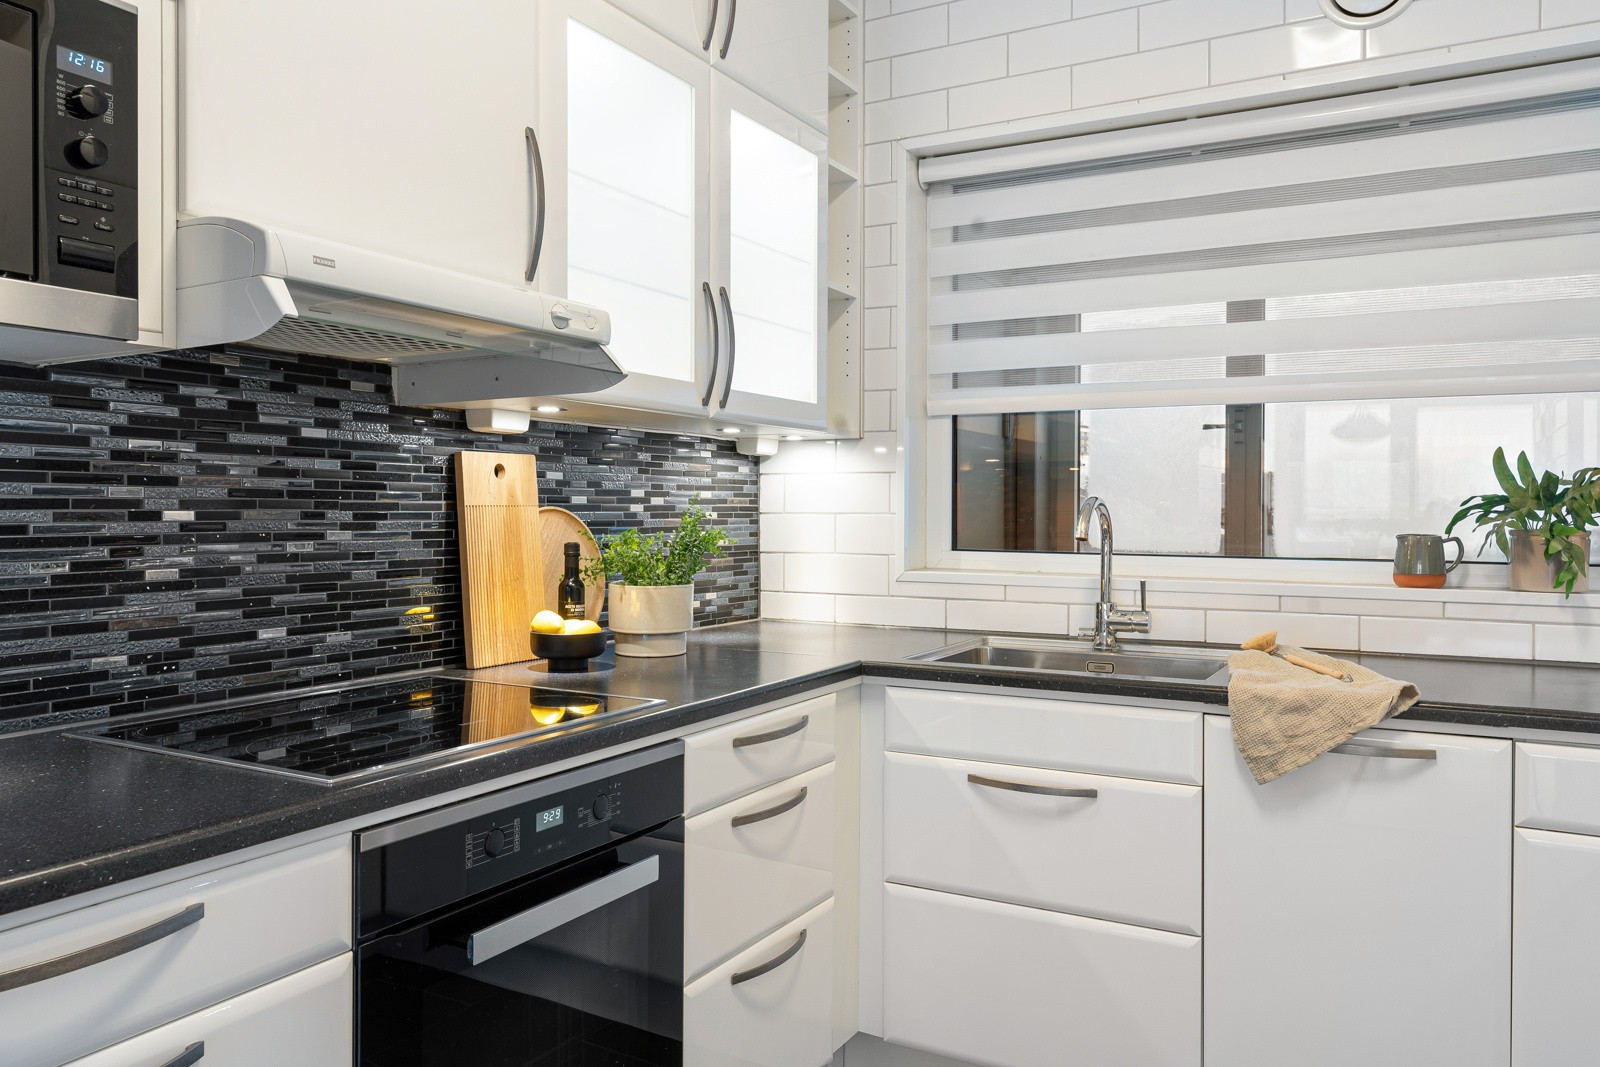 Kjøkkenet har rikelig med oppbevaring, samt at det er lyst og innbydende og med vindu over kjøkkenbenk